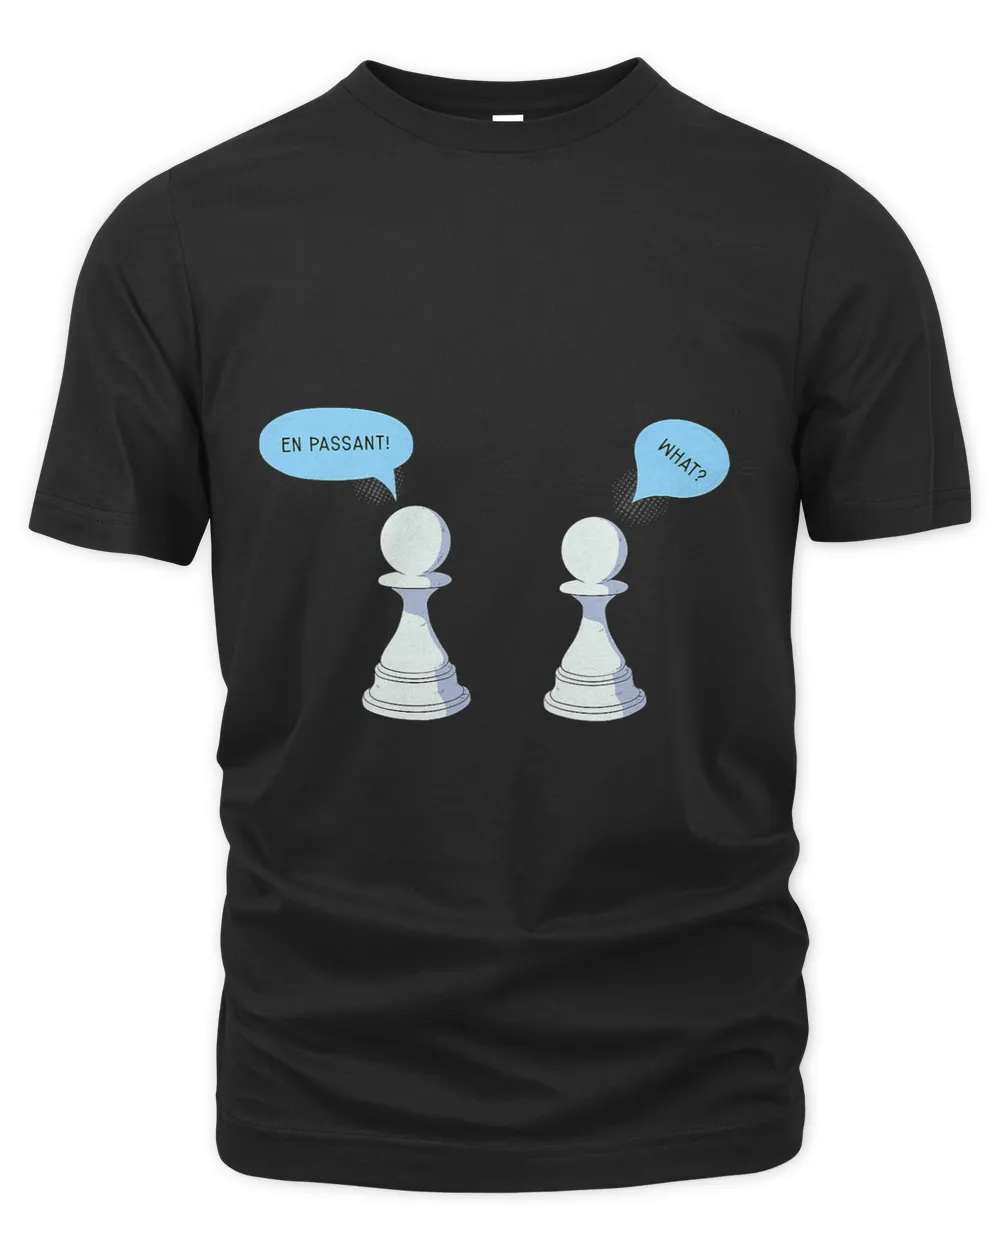 Chess Opening Queens Gambit Tshirt 1